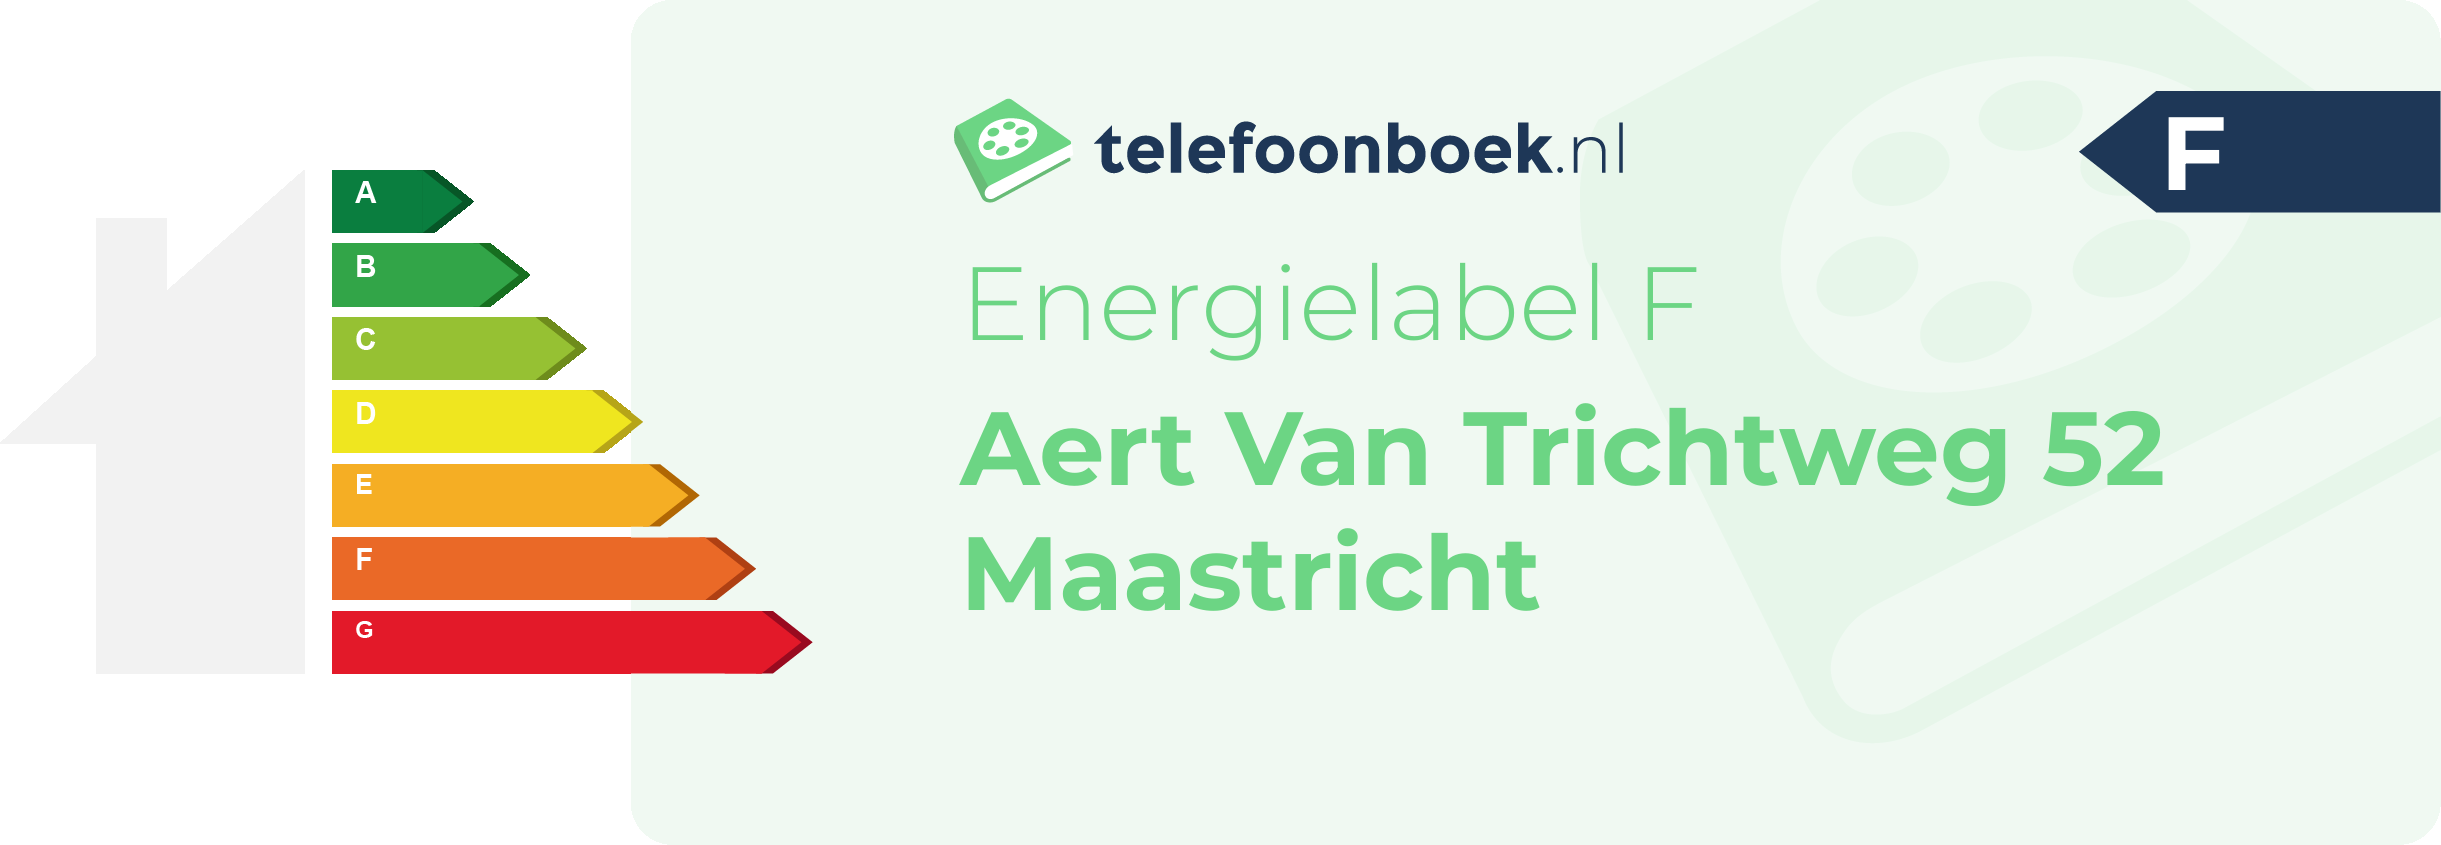 Energielabel Aert Van Trichtweg 52 Maastricht